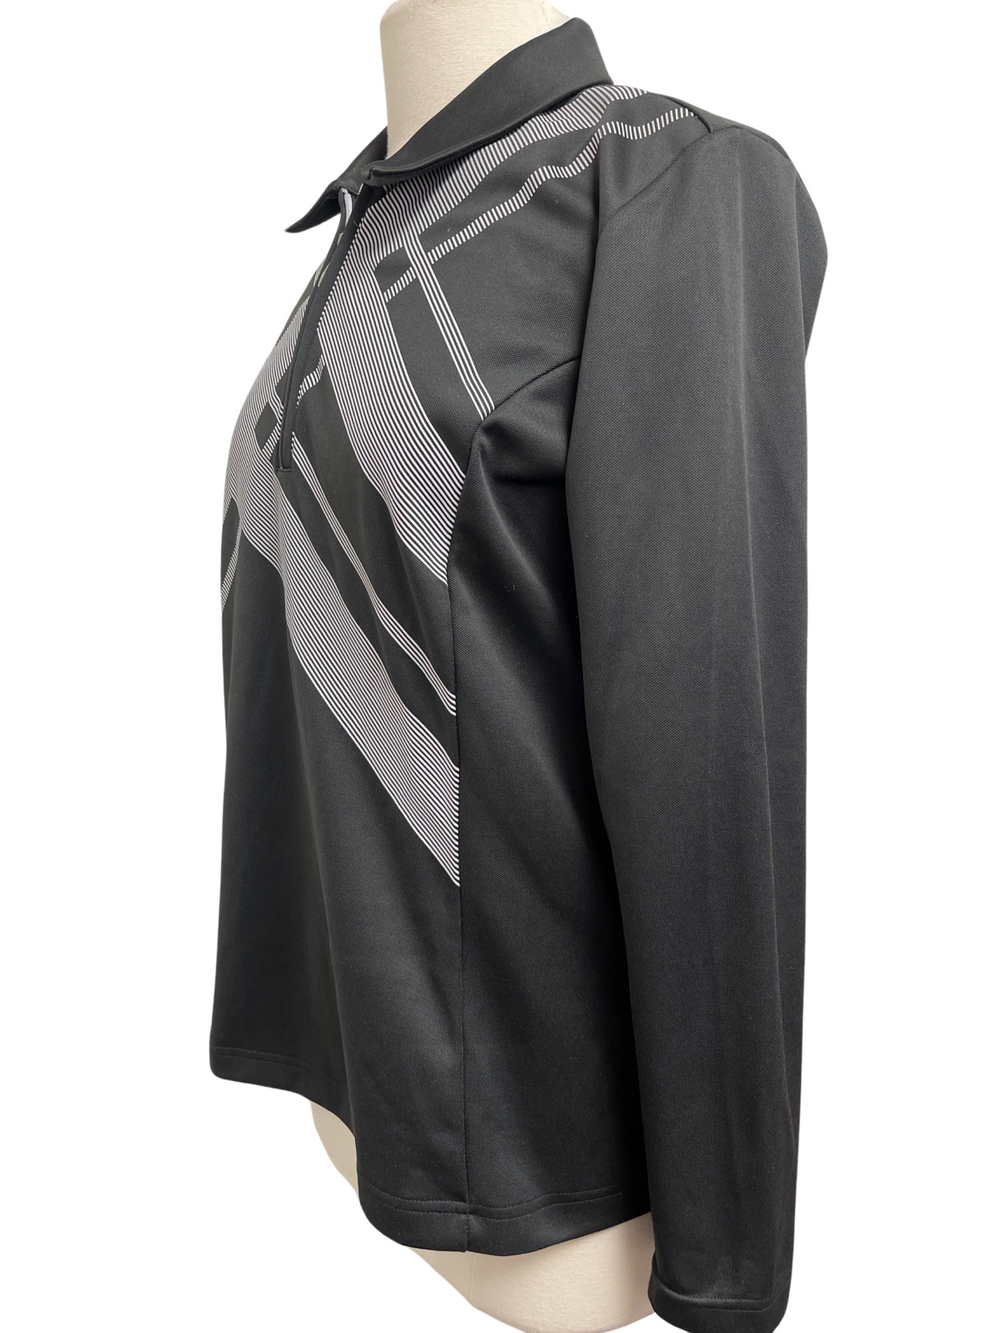 Adidas Long Sleeve 1/4 Zip Top - Black - Size Large - Skorzie